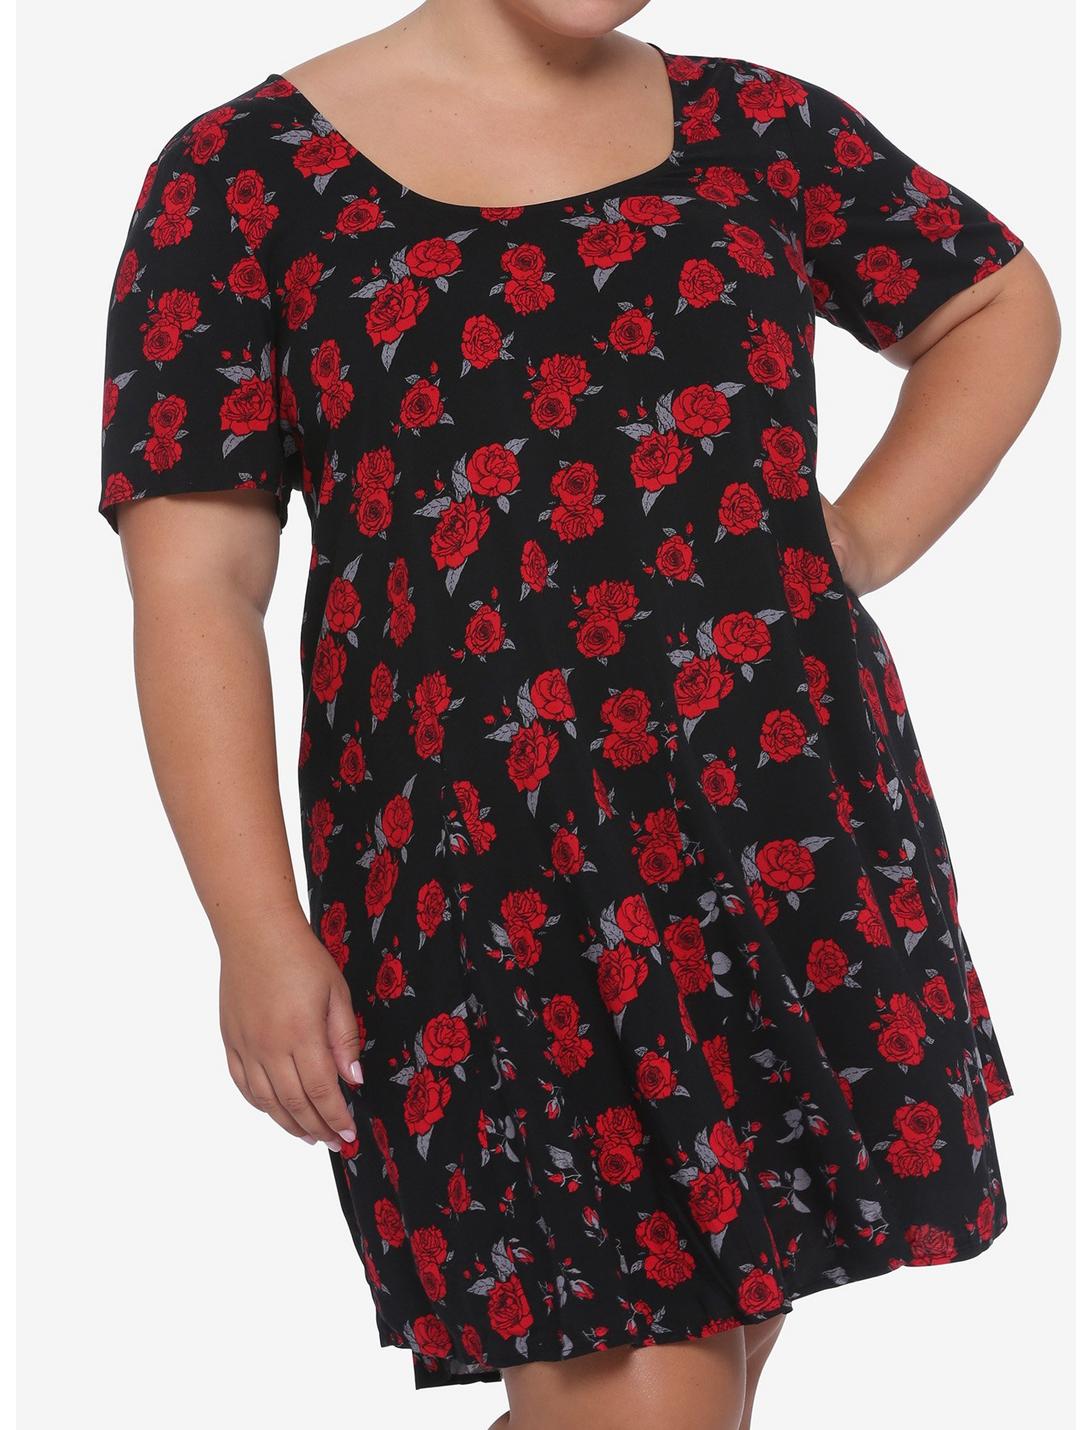 Red Roses Scoop Neck Dress Plus Size, MULTI, hi-res